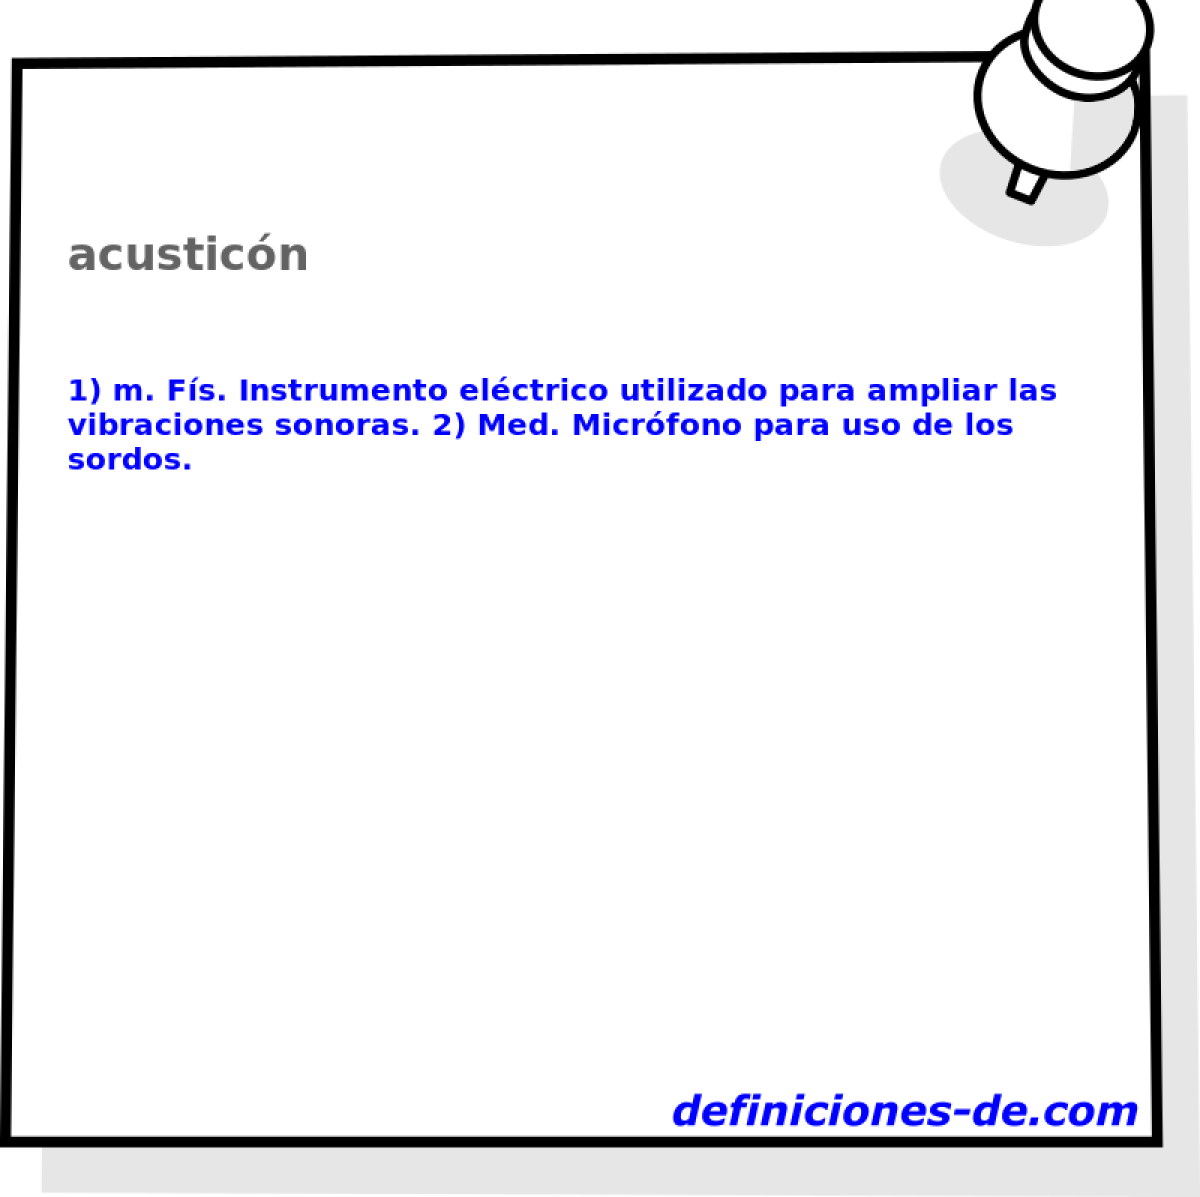 acusticn 